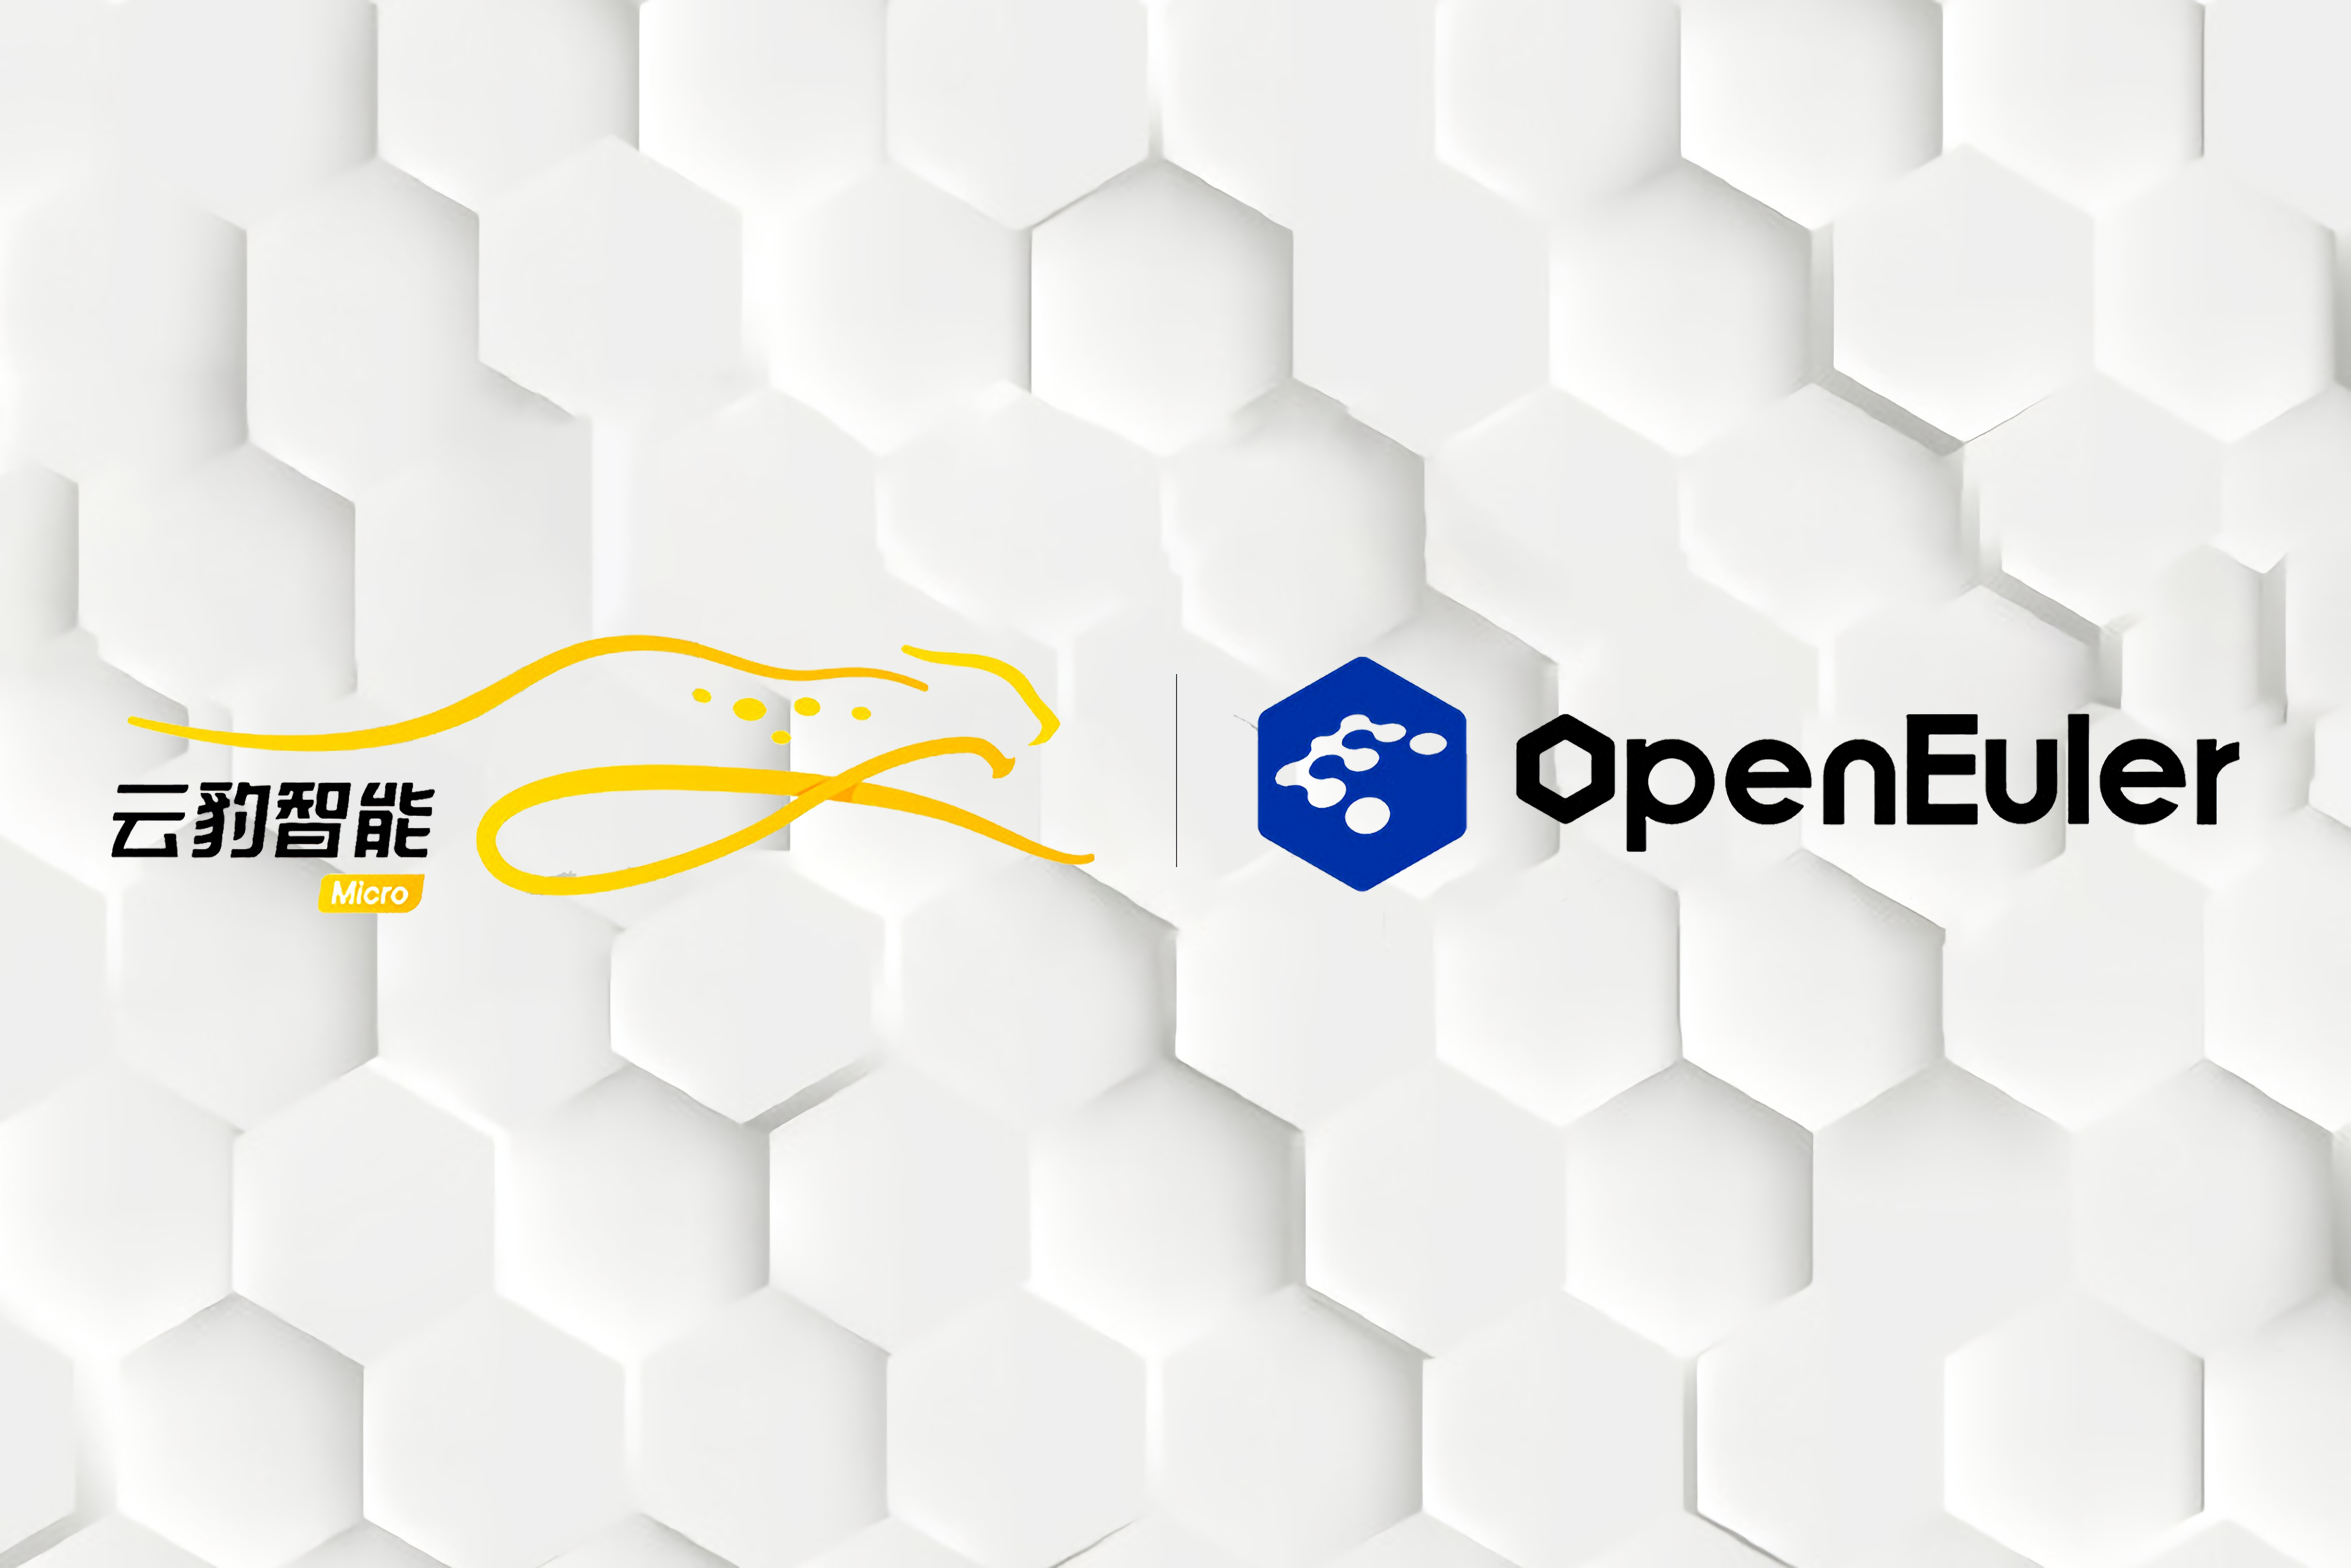 DPU 芯片头部企业云豹智能加入 openEuler社区，为数字中国基础设施助力